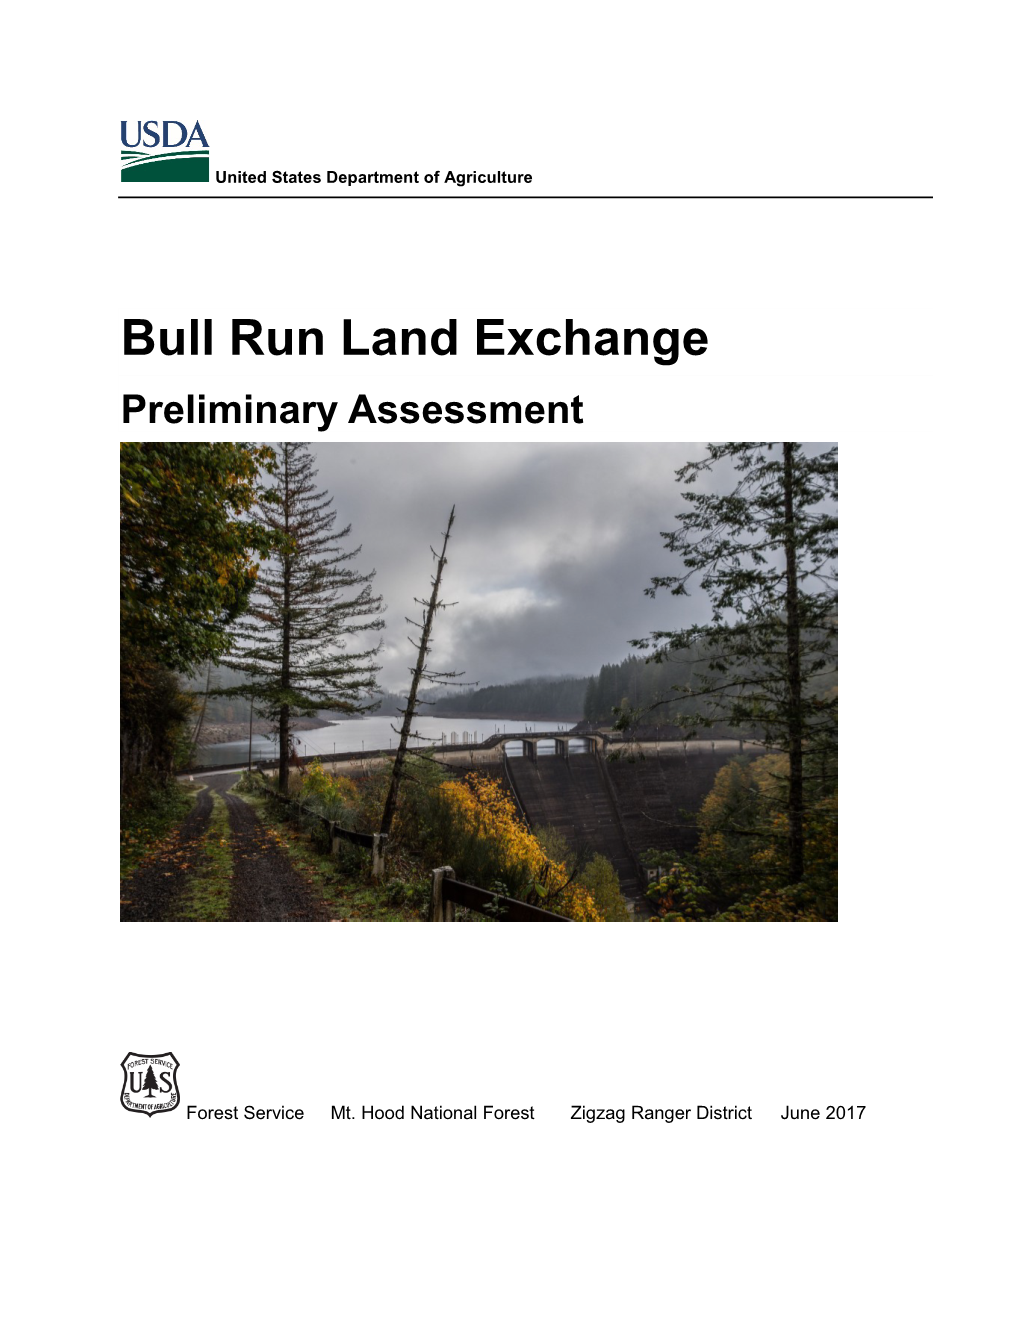 Bull Run Land Exchange Preliminary Assessment